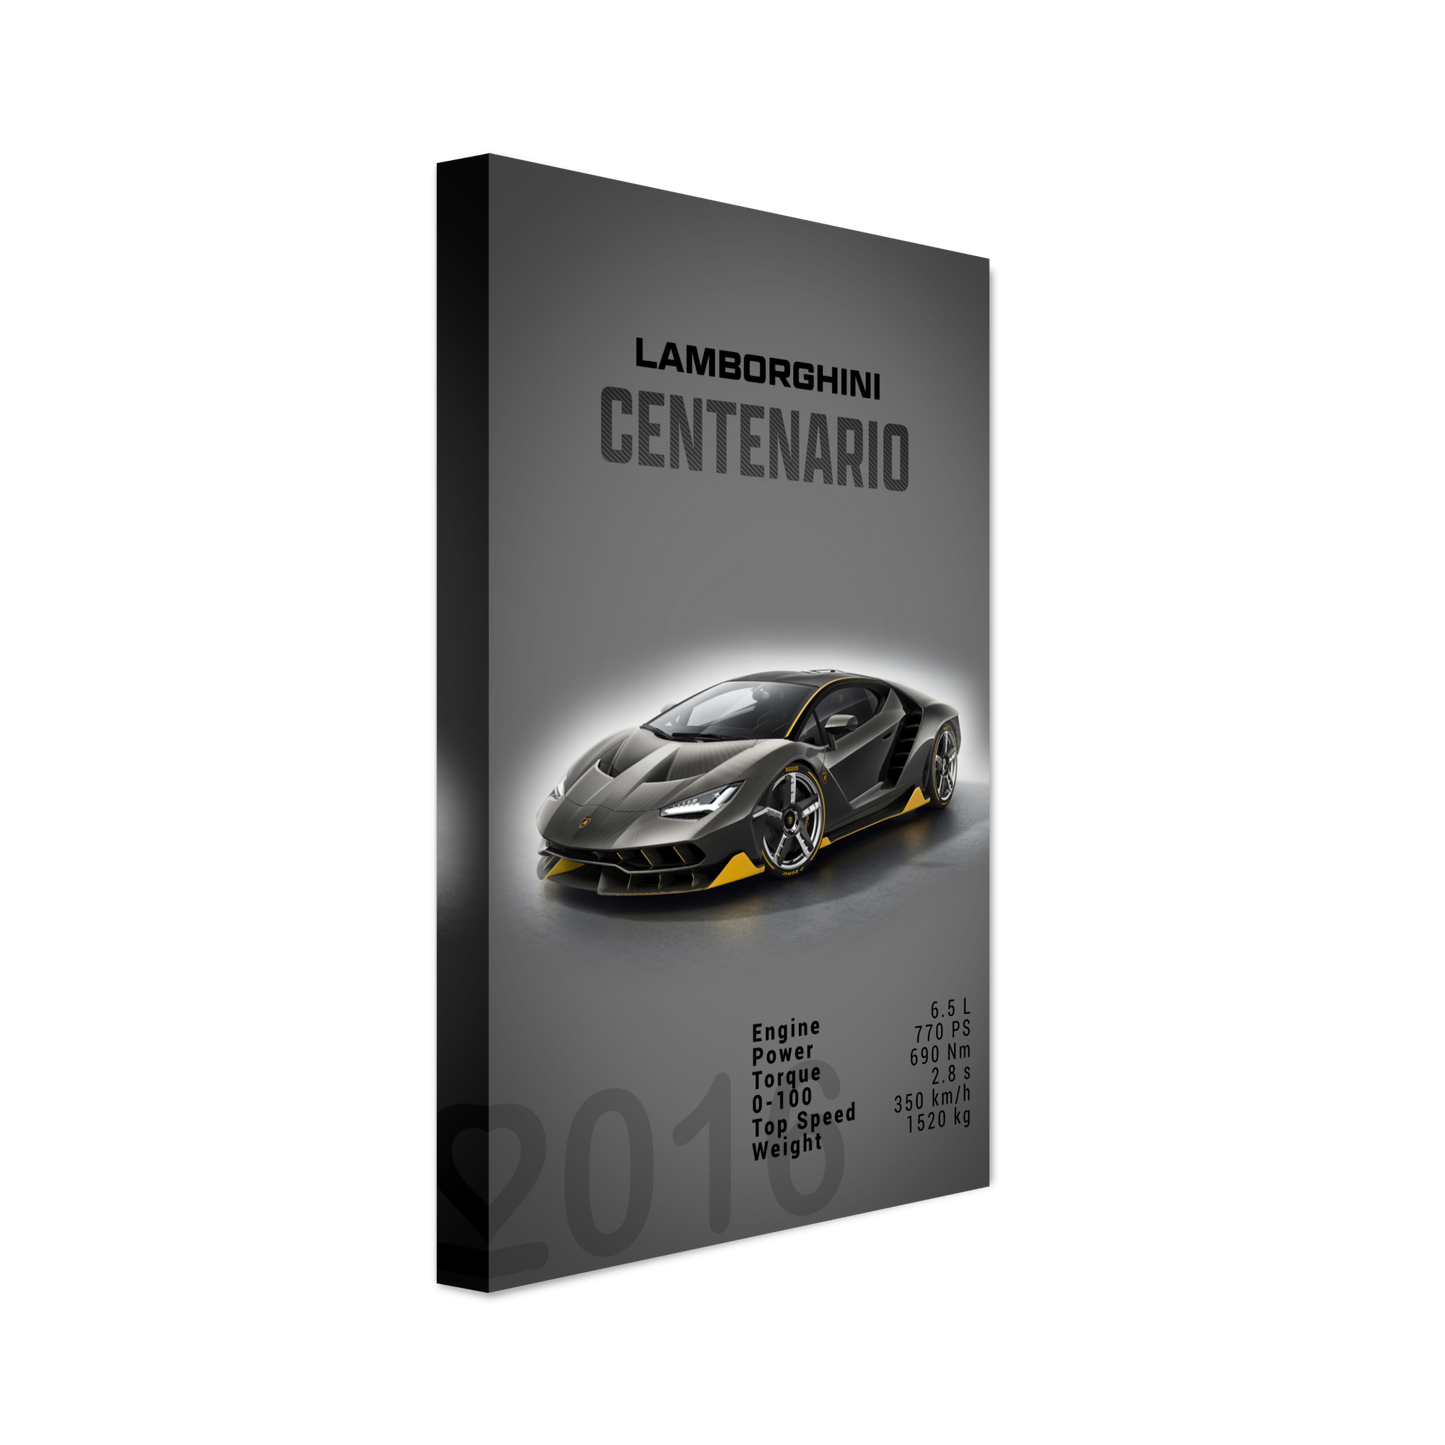 Lamborghini Centenario (LAMBO16D)